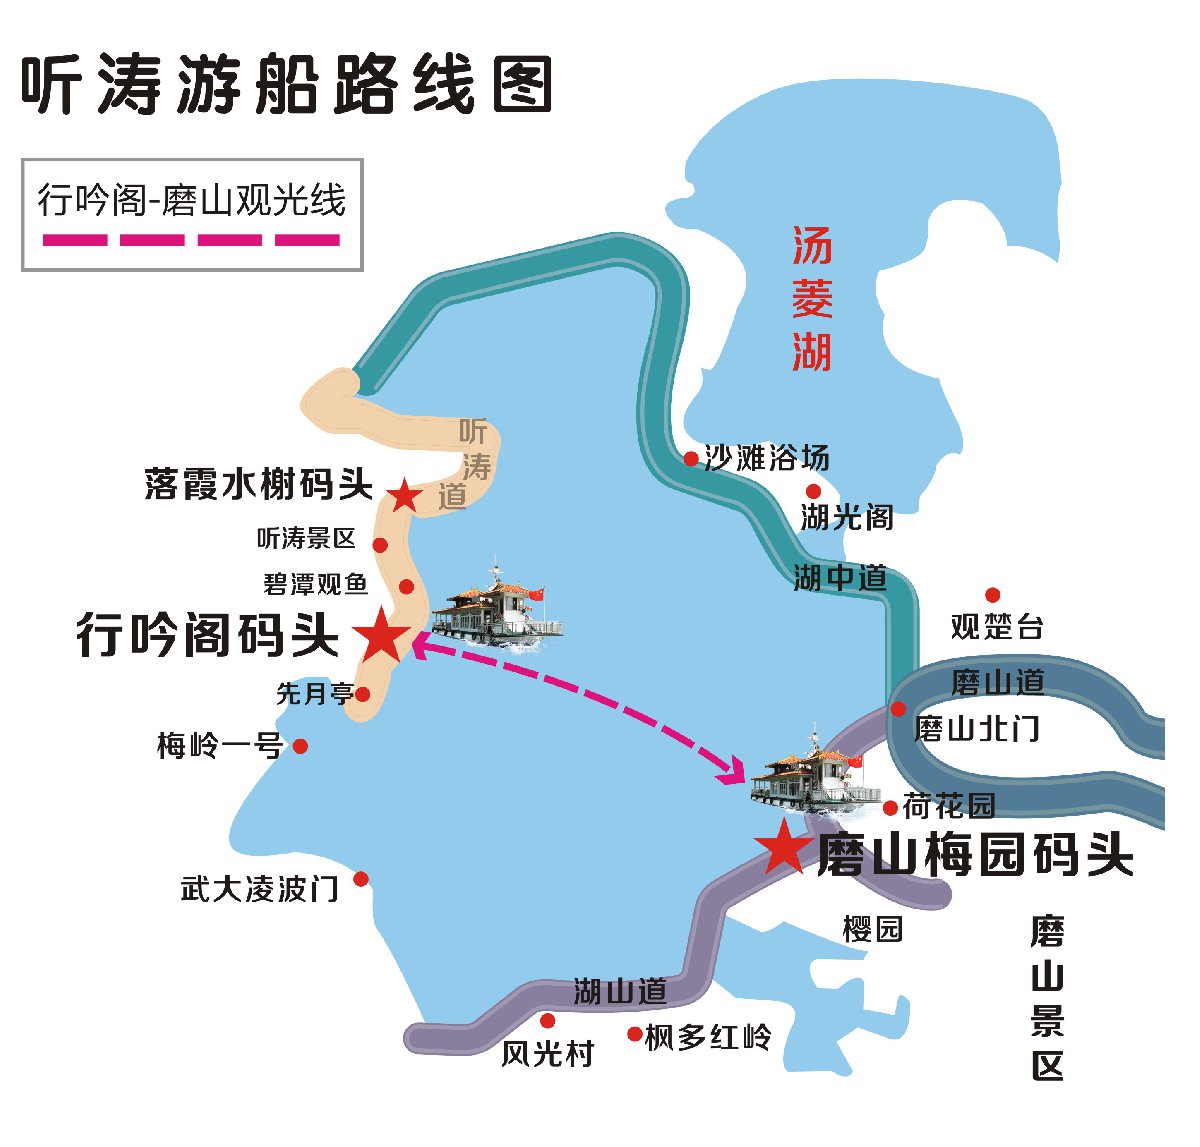 武汉旅游 旅游景点 景点攻略 > 东湖游船从哪里上船?船票多少钱?